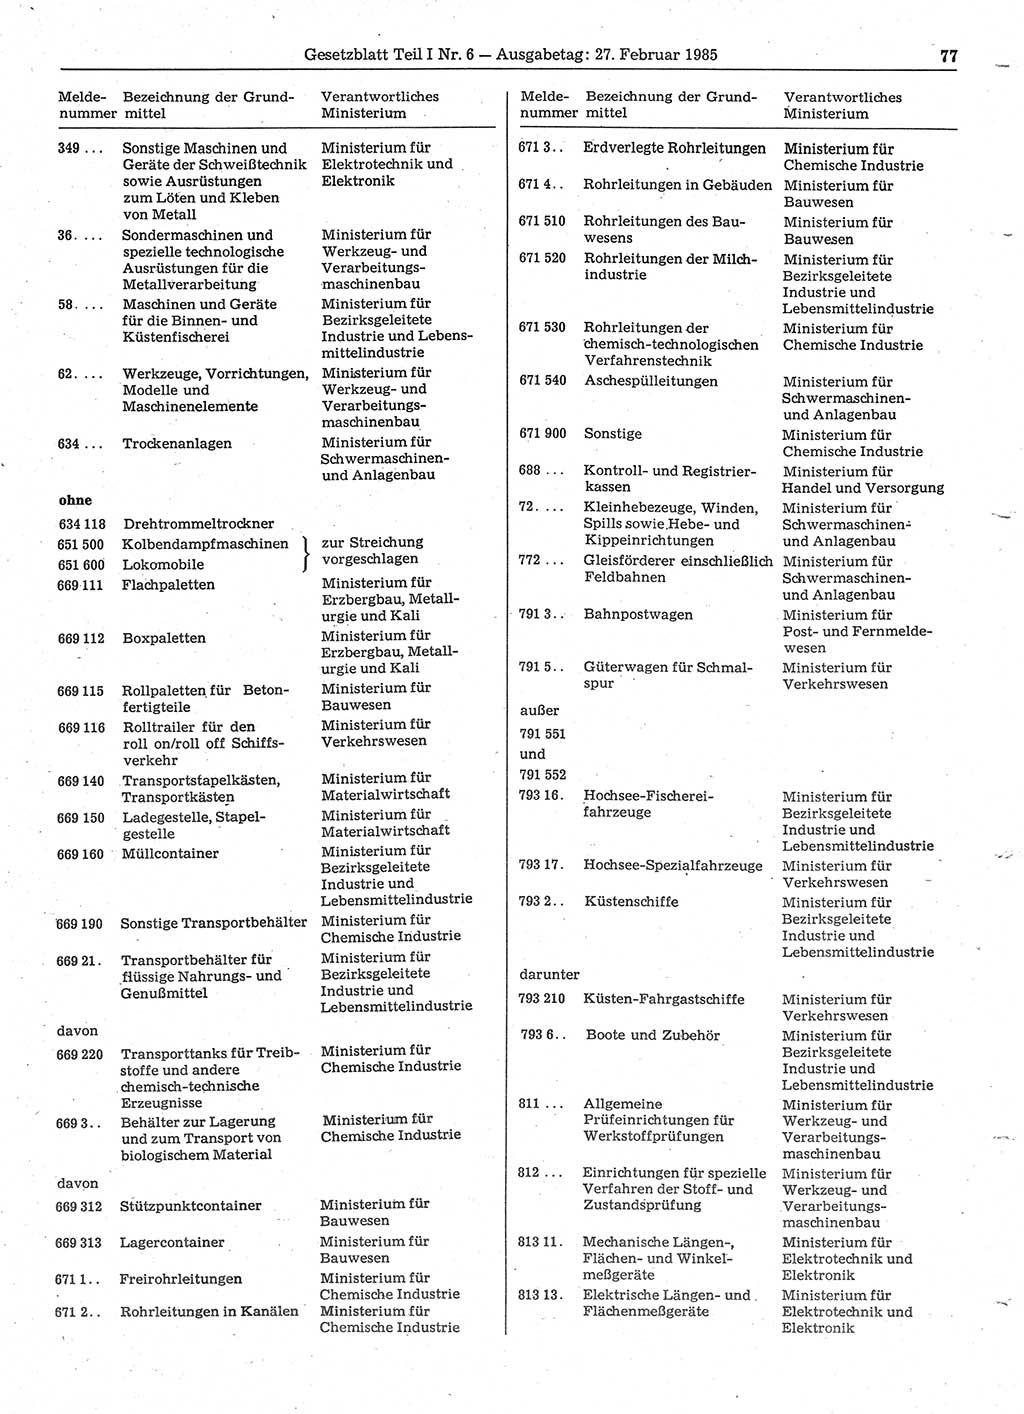 Gesetzblatt (GBl.) der Deutschen Demokratischen Republik (DDR) Teil Ⅰ 1985, Seite 77 (GBl. DDR Ⅰ 1985, S. 77)